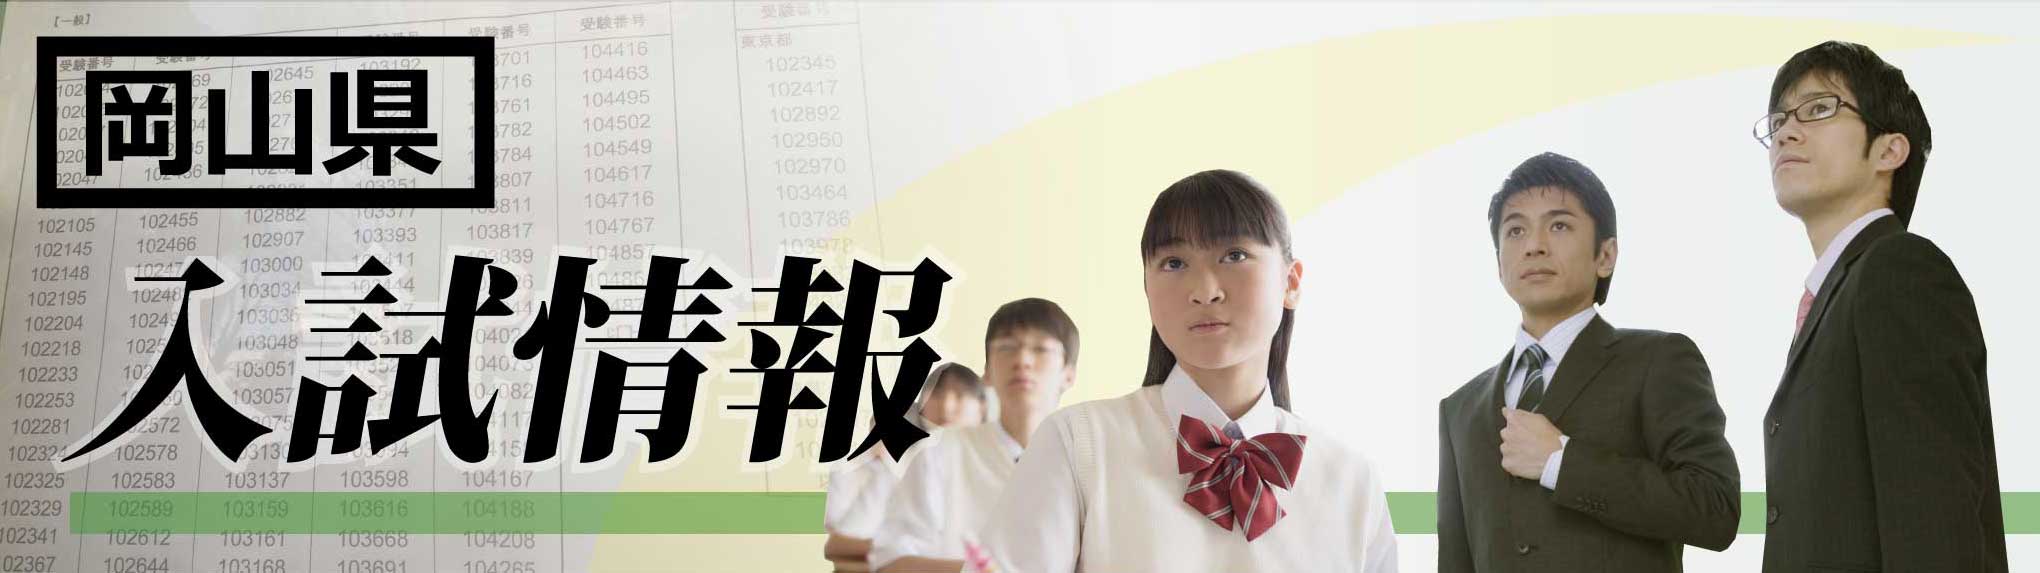 岡山県 高校入試21 ボーダーライン 偏差値 家庭教師のagent